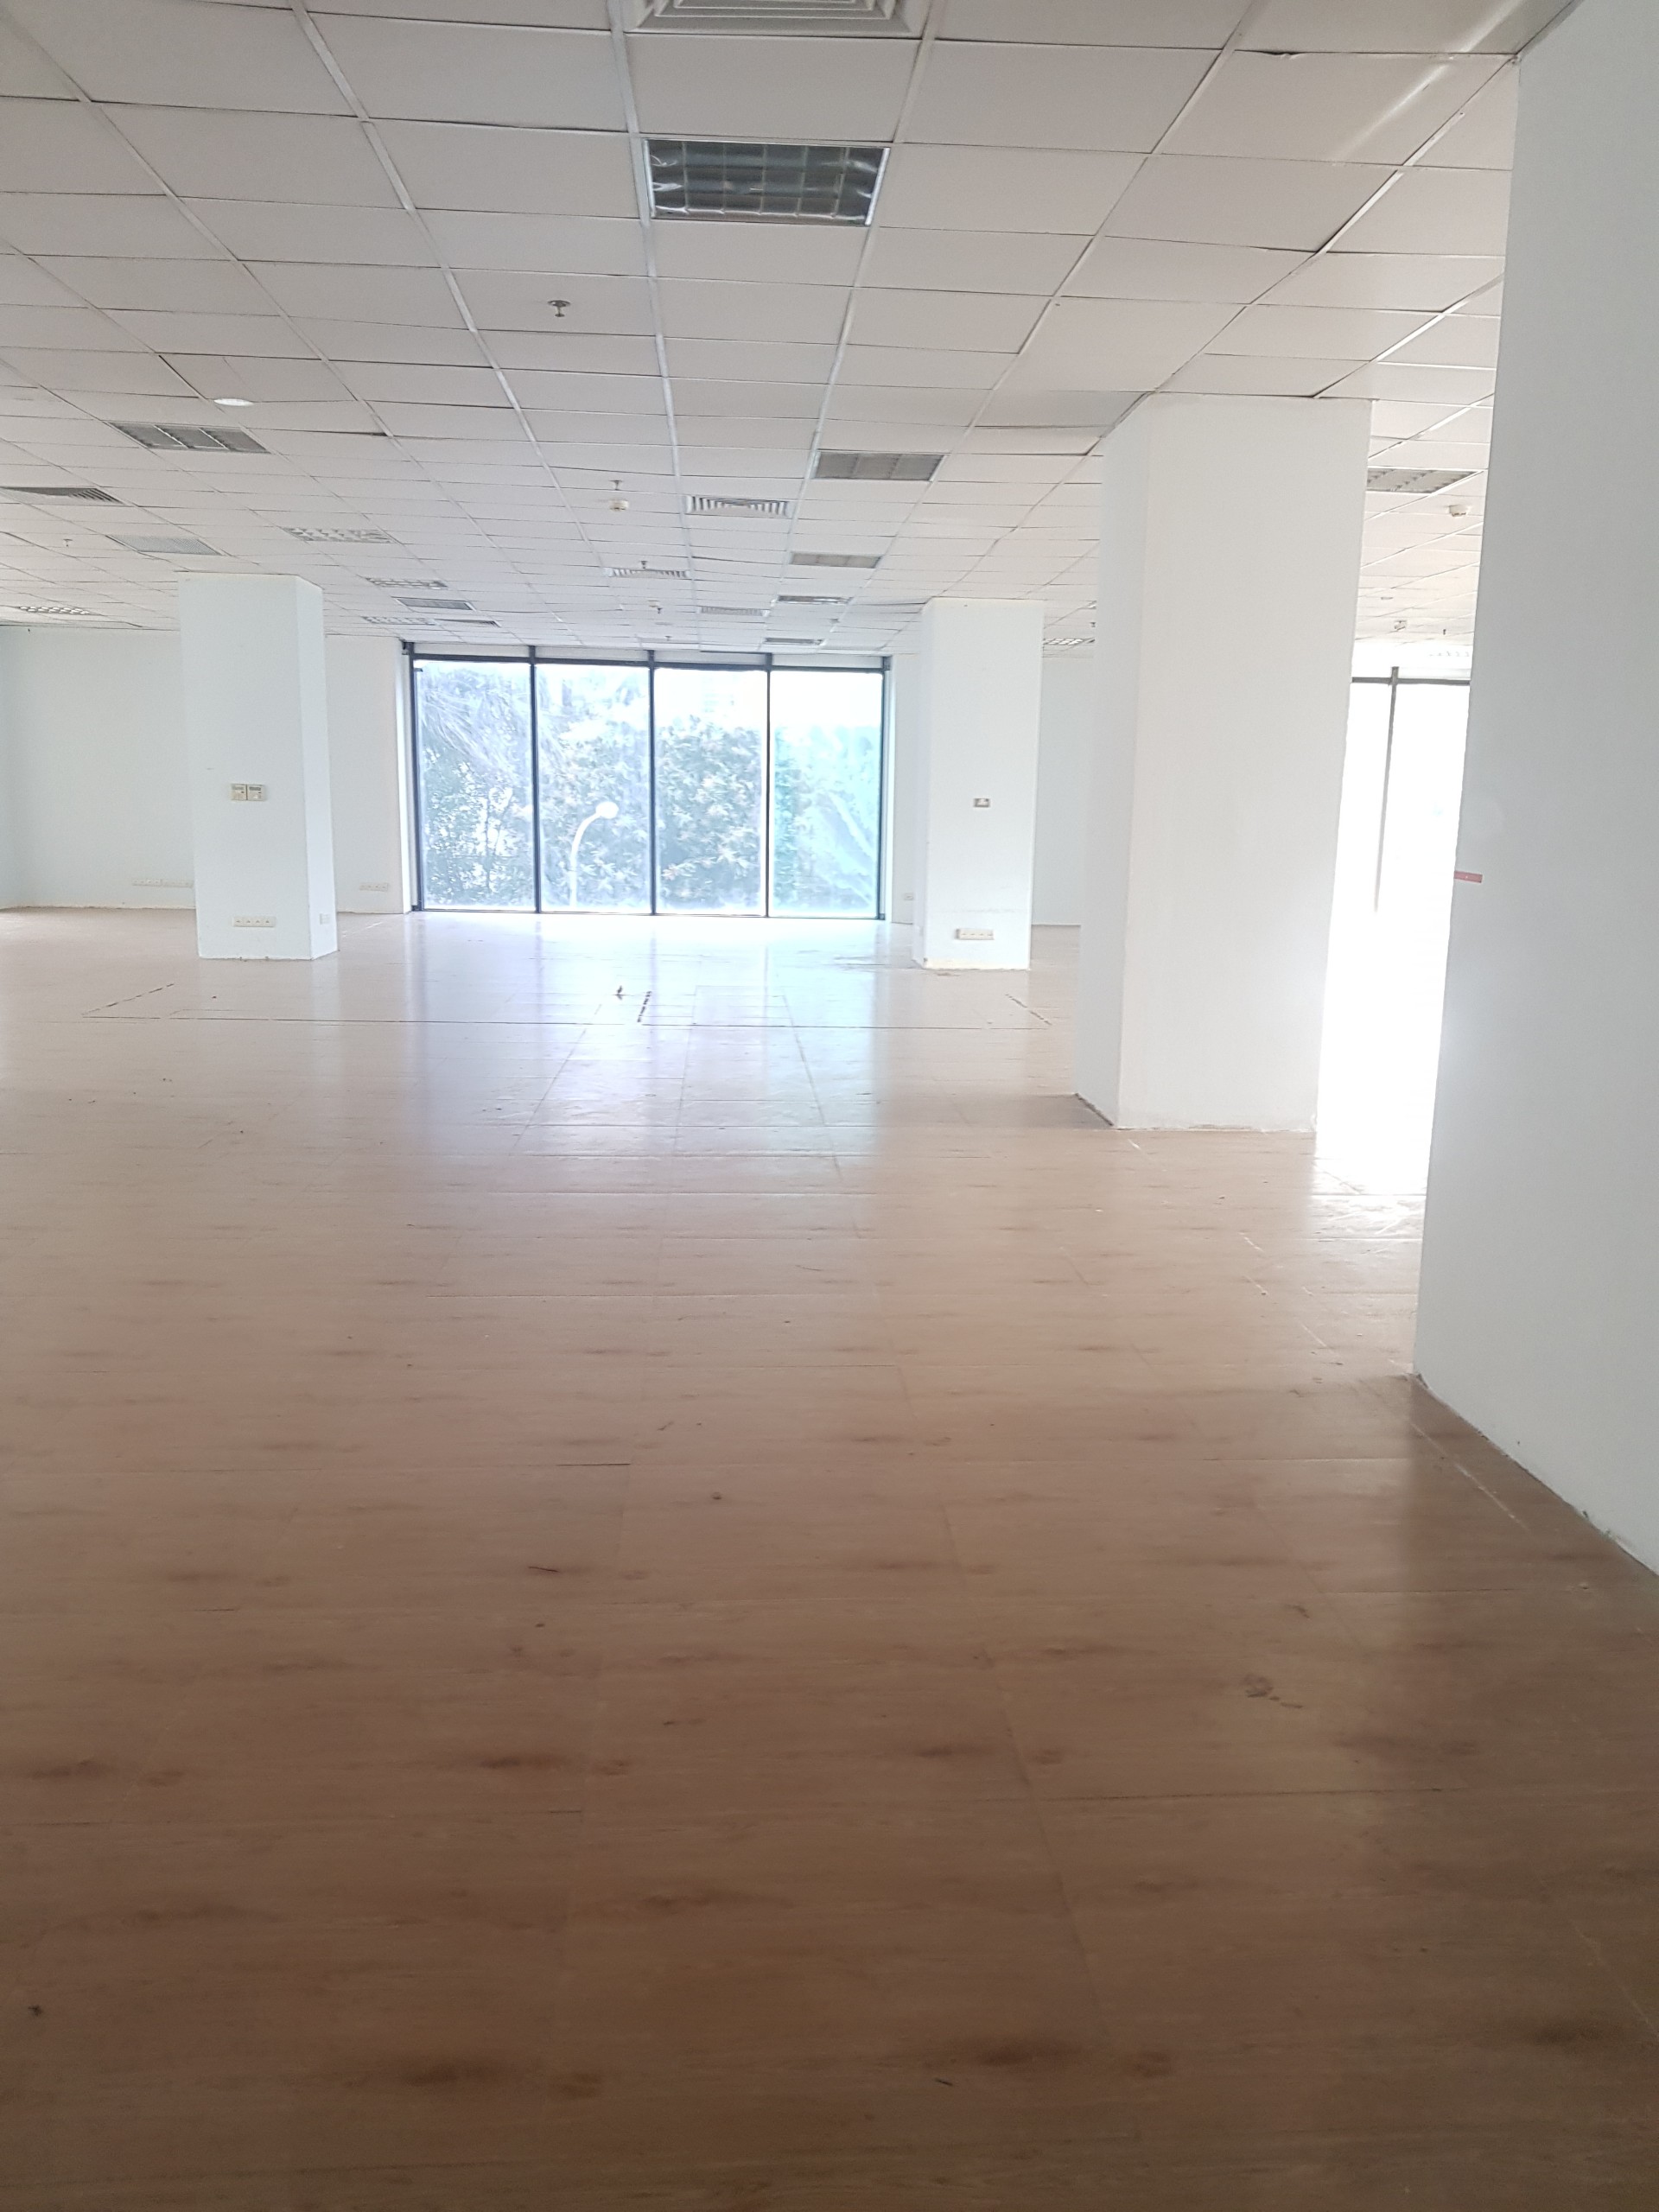 BQL Toà nhà Trung Yên Plaza cần cho thuê 4 tầng khối đế làm văn phòng dịch vụ diện tích: Từ 320,8m2 đến khoảng 700 m2 2